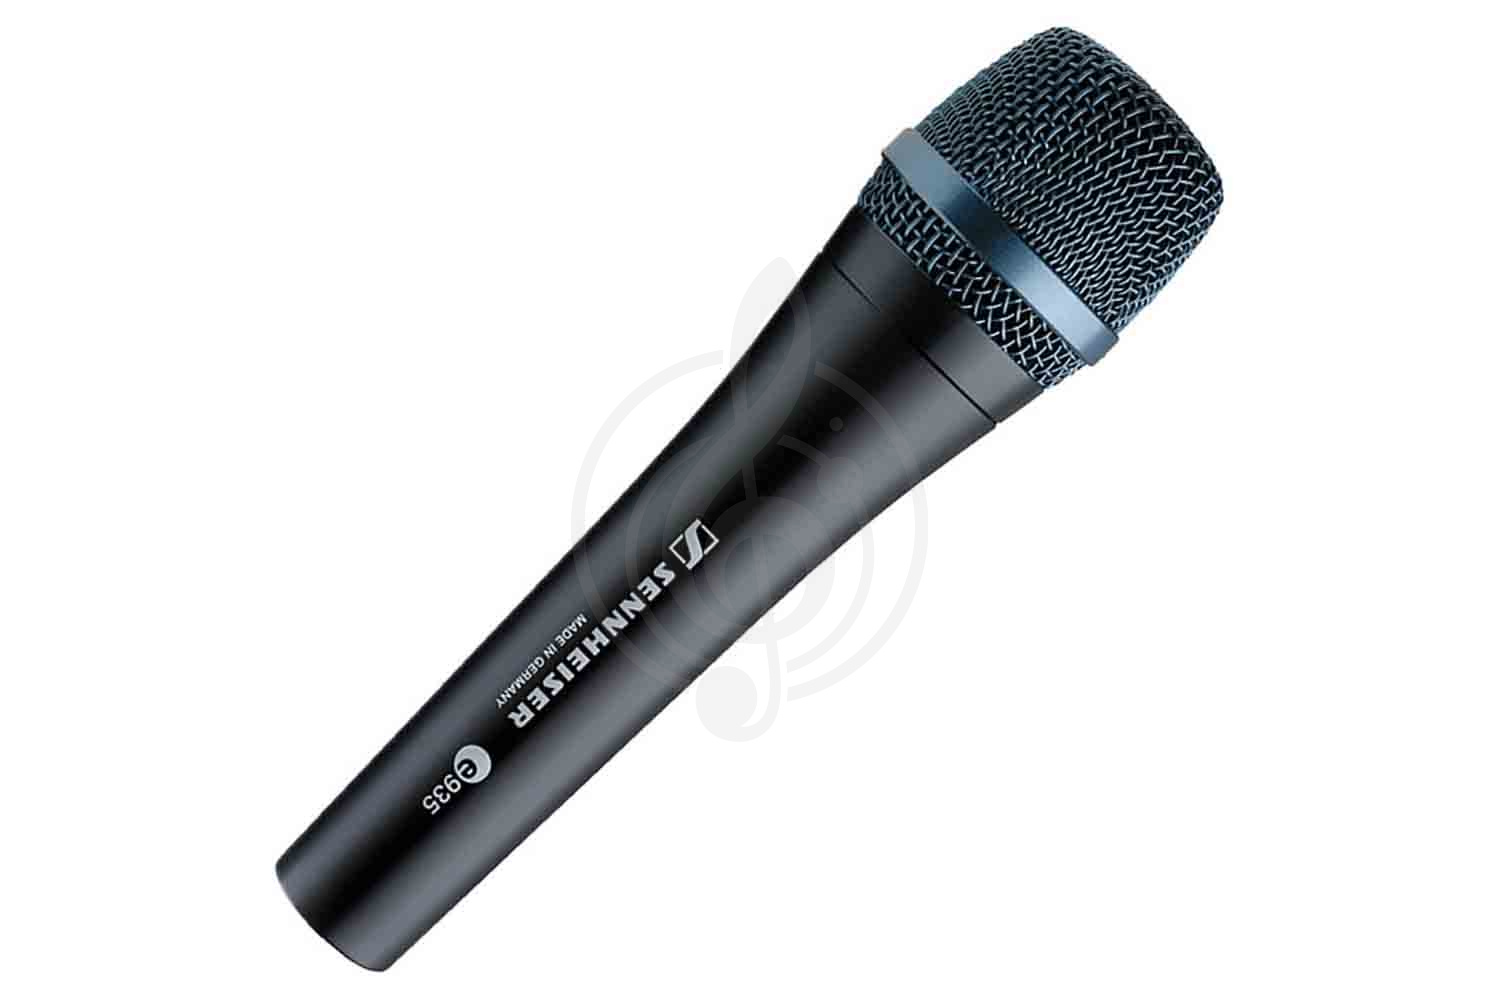 Динамический вокальный микрофон Динамические вокальные микрофоны Sennheiser Sennheiser E 935  Микрофон динамический вокальный E 935 - фото 1